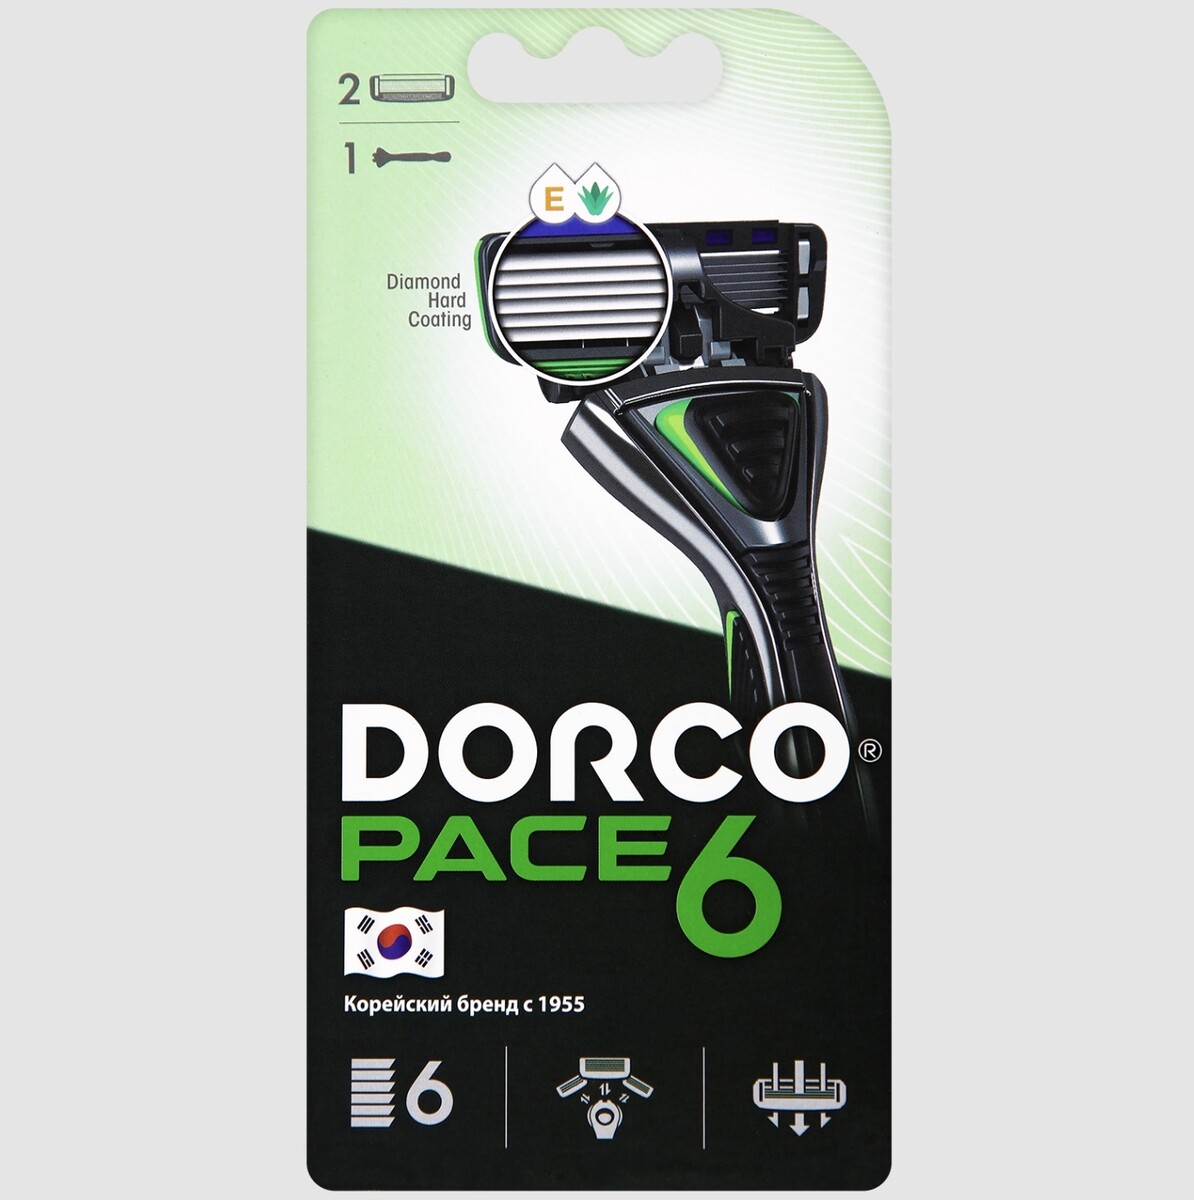 Dorco pace6 (станок+2's) система с 6лезвиями (ю.корея) станок бритвенный 4 сменных кассеты совместимы с venus